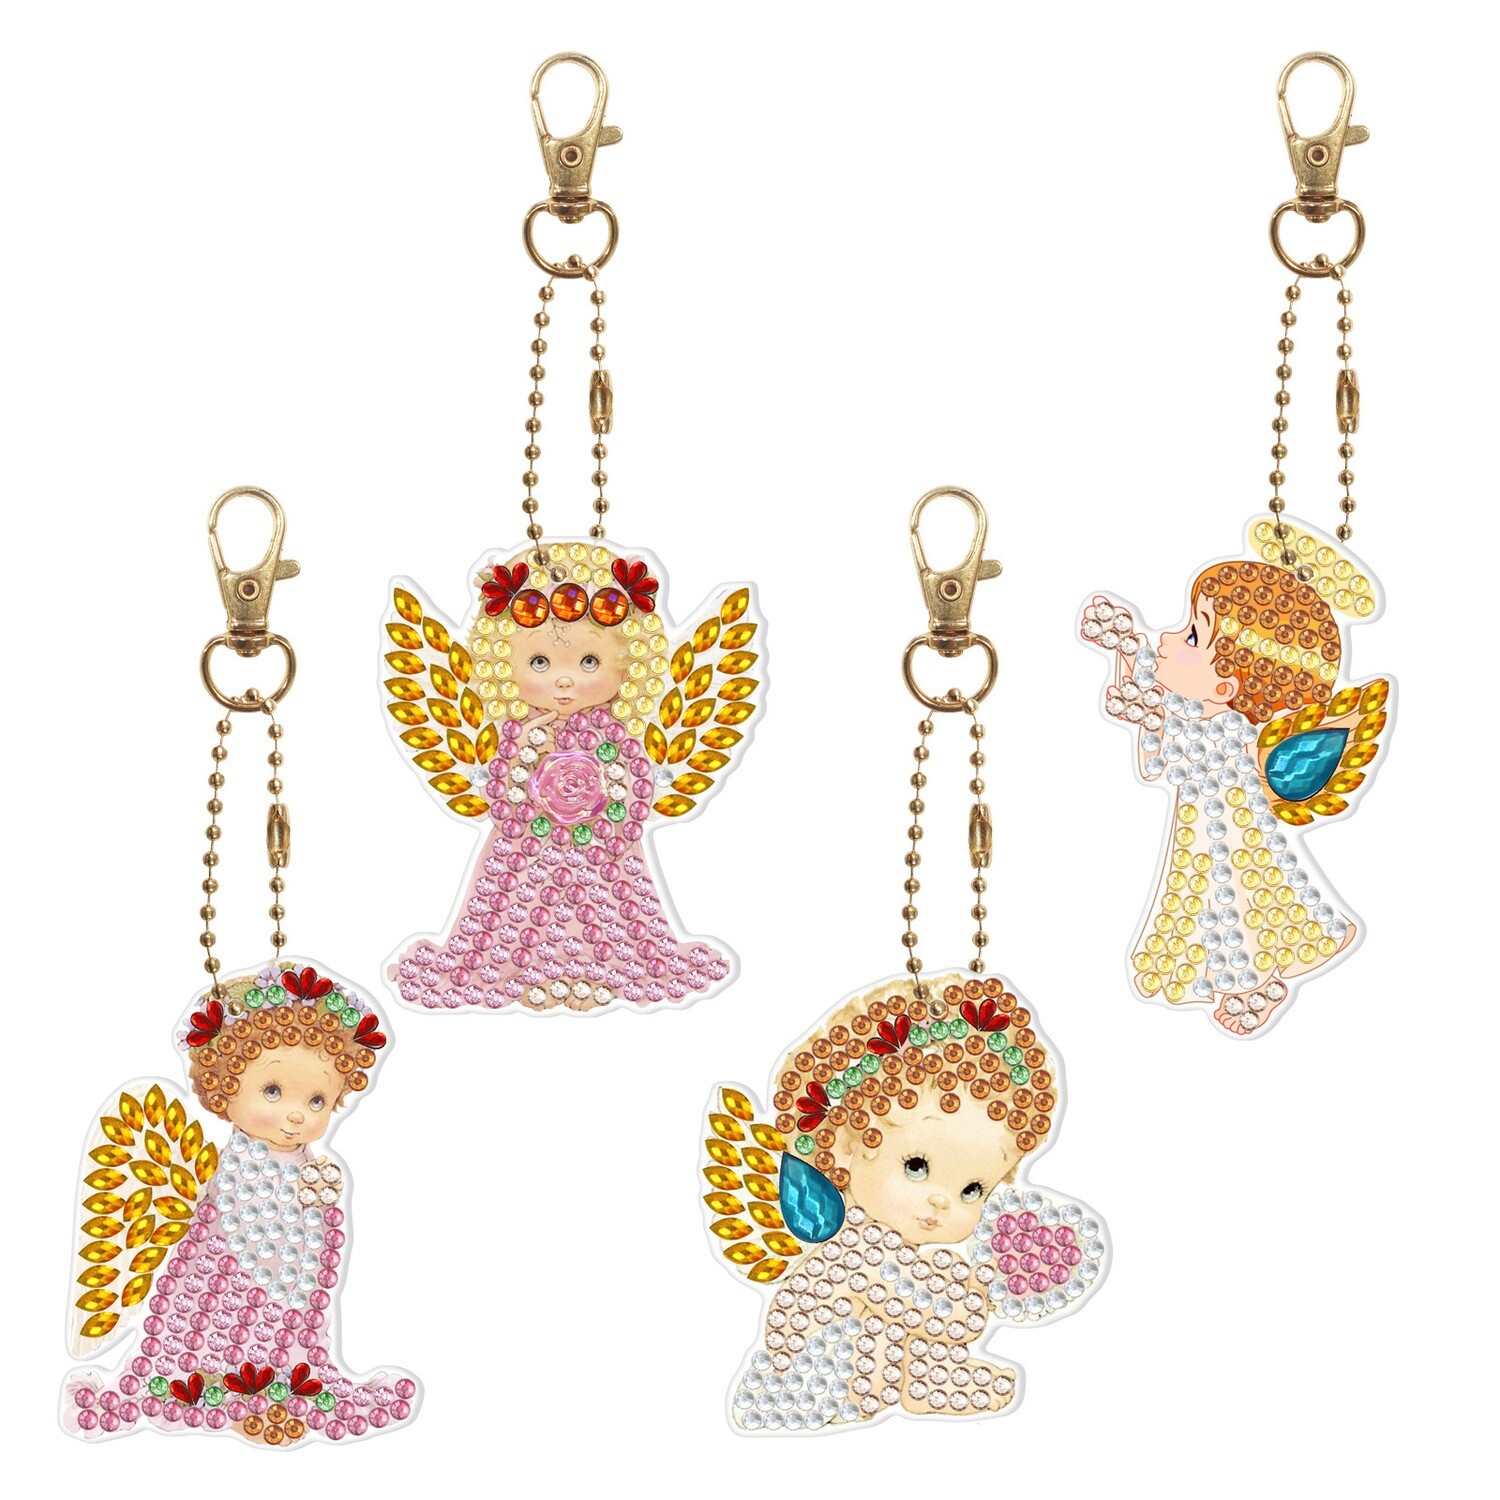 Keychains - ANGELS - Set of 4  - Diamond Painting Kit